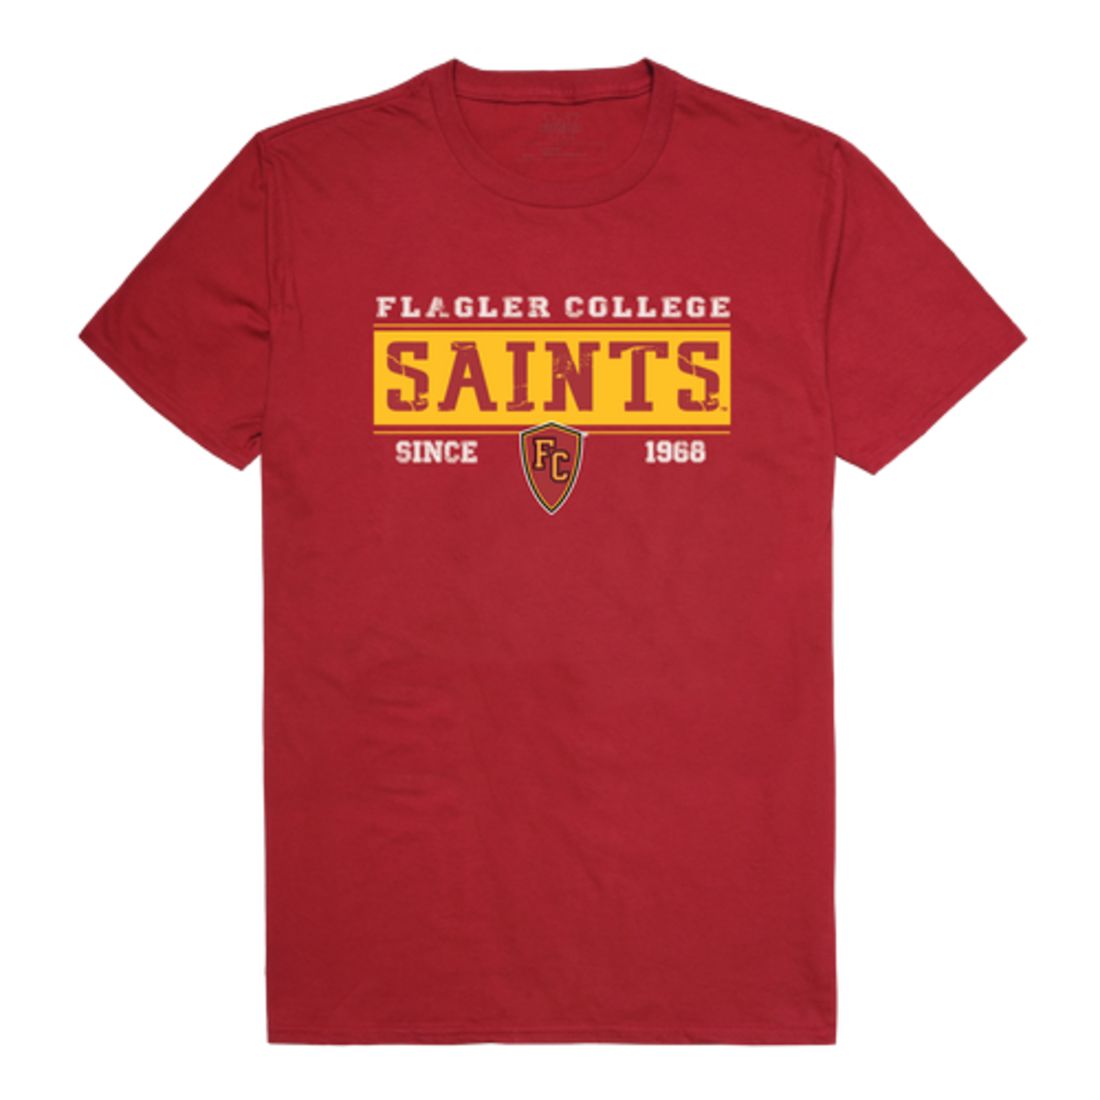 Flagler College Saints Established T-Shirt Tee